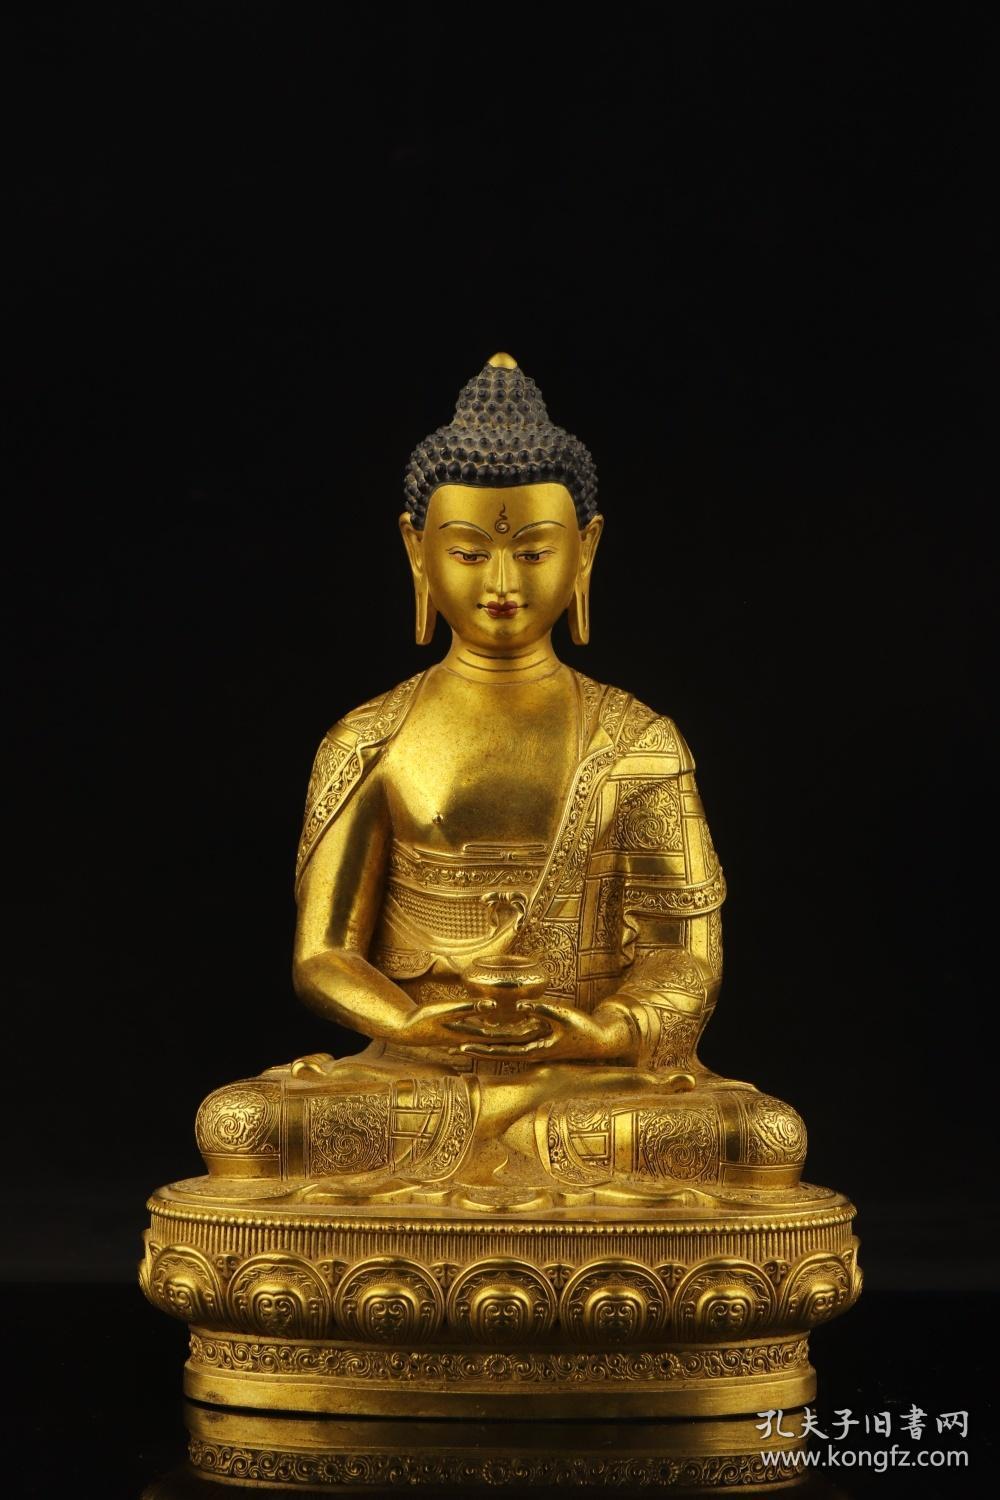 旧藏,铜鎏金释迦牟尼佛坐像 规格:长14.2cm宽10.